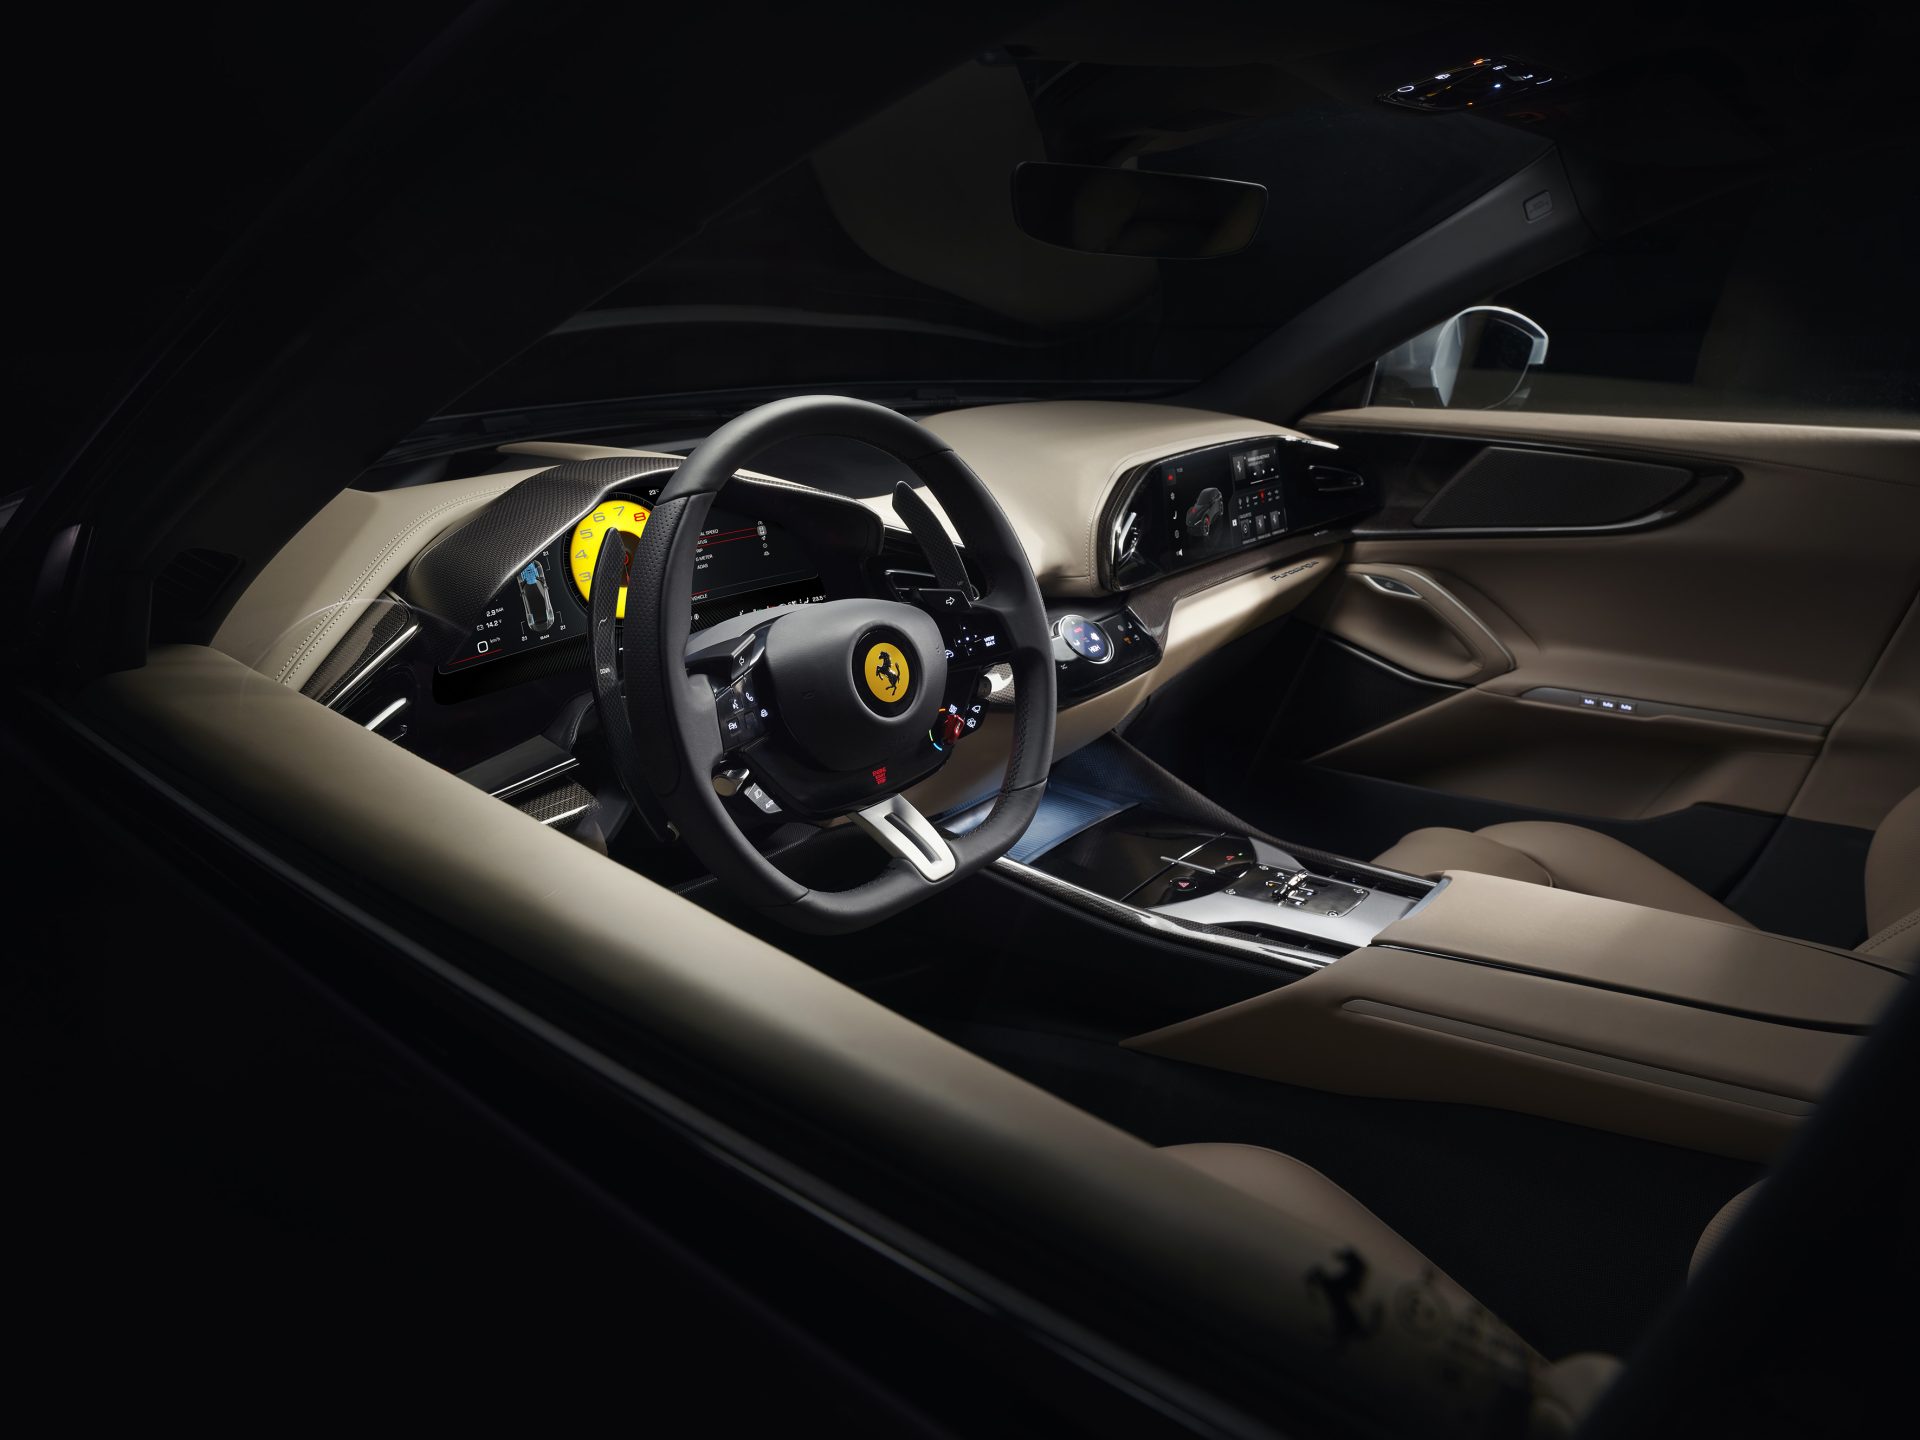 15 Interior through drivers window HR A4 Ferrari Purosangue : V12, ατμοσφαιρική, με 725 ίππους